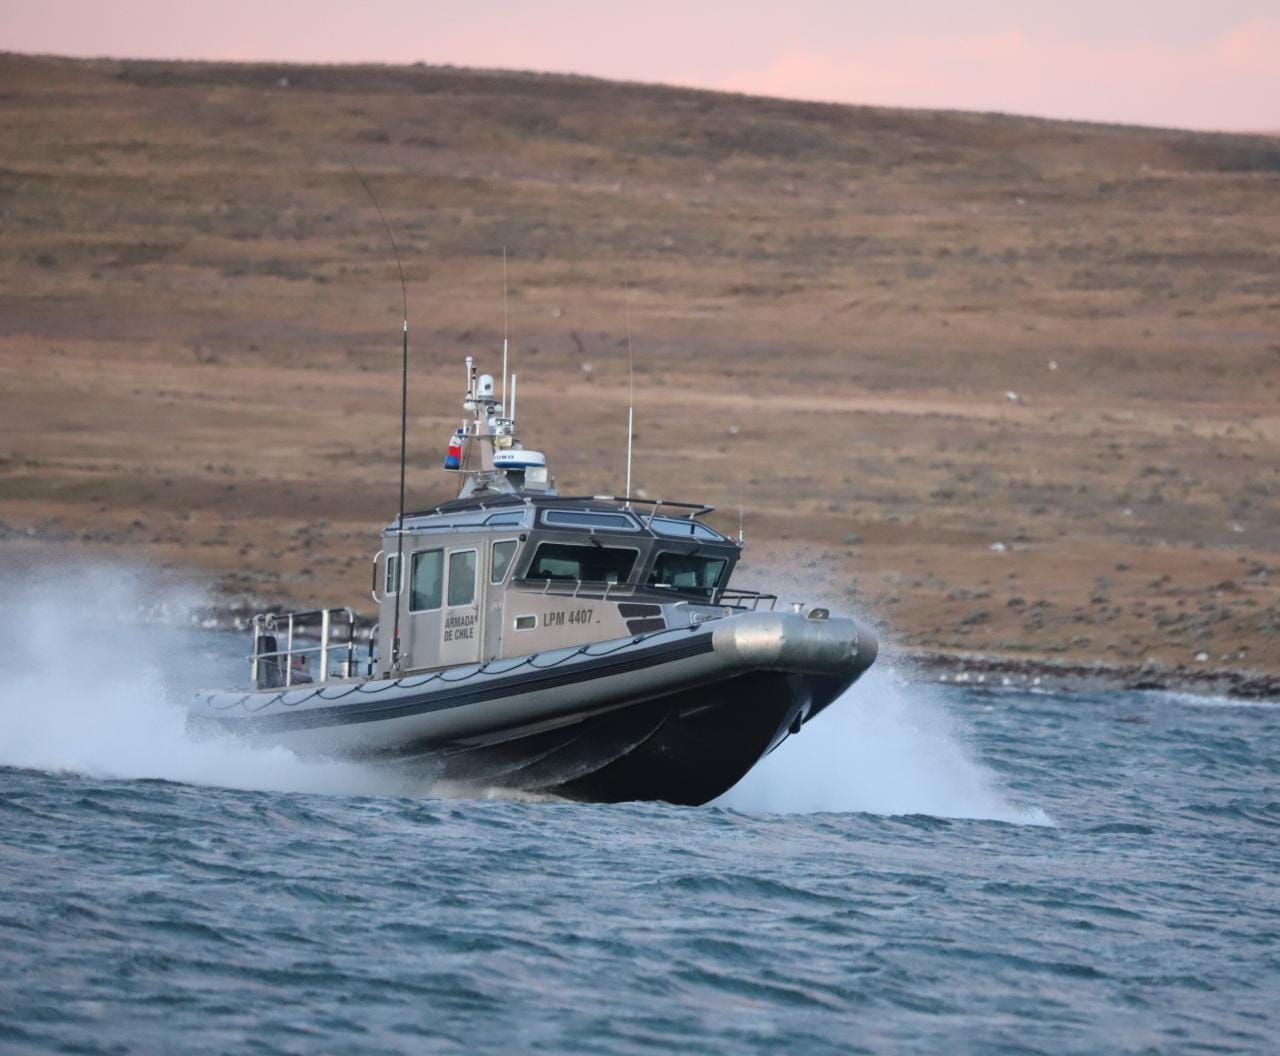 Operaciones de búsqueda y salvamento de pescador desaparecido en Tierra del Fuego, inician fase pasiva en el estrecho de Magallanes